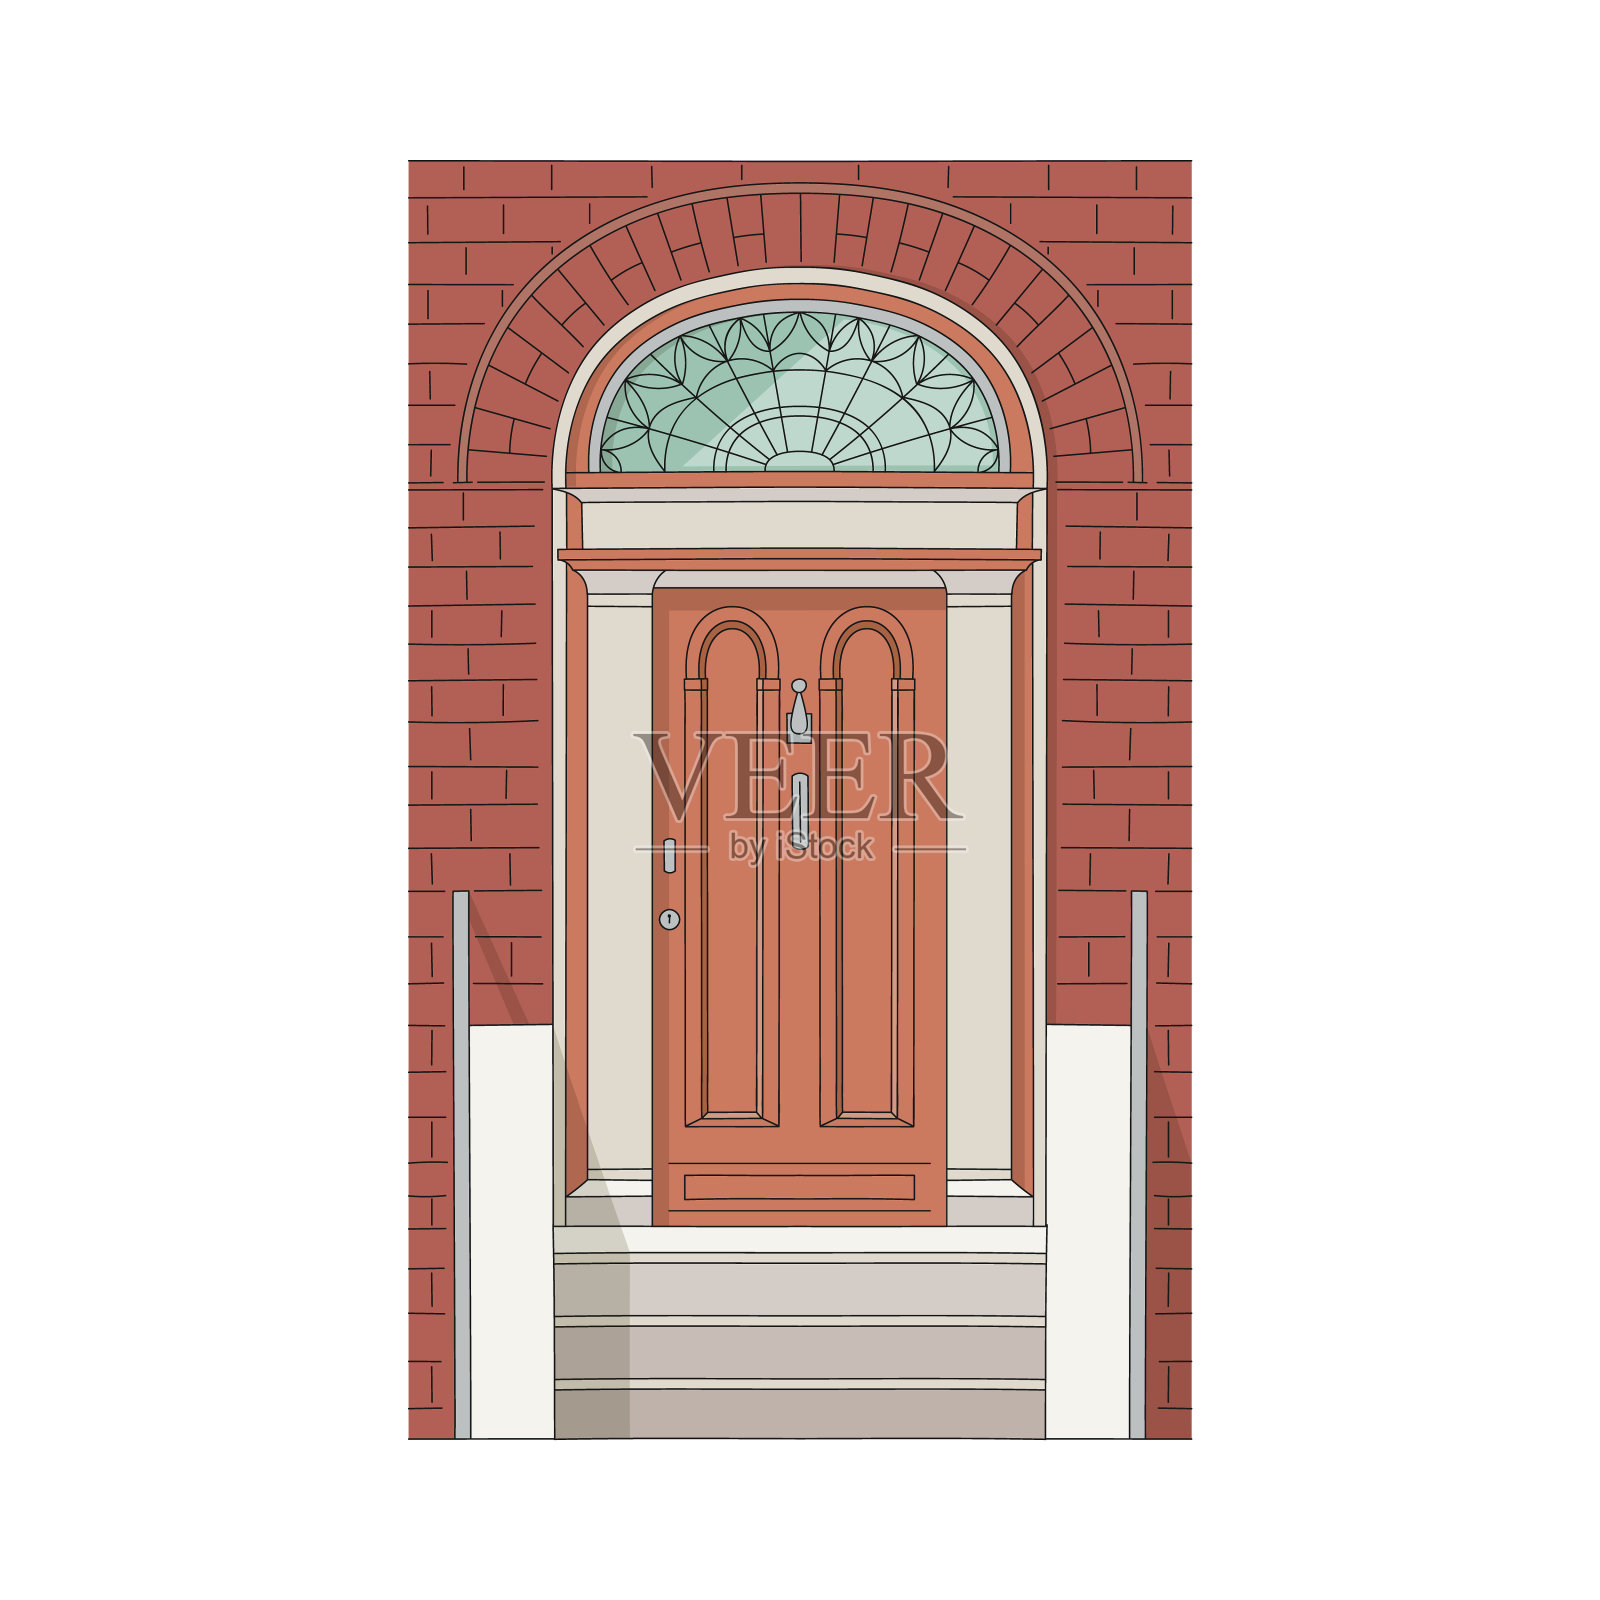 绘有彩色玻璃、石阶、砖墙的房屋、建筑物的门。插画图片素材